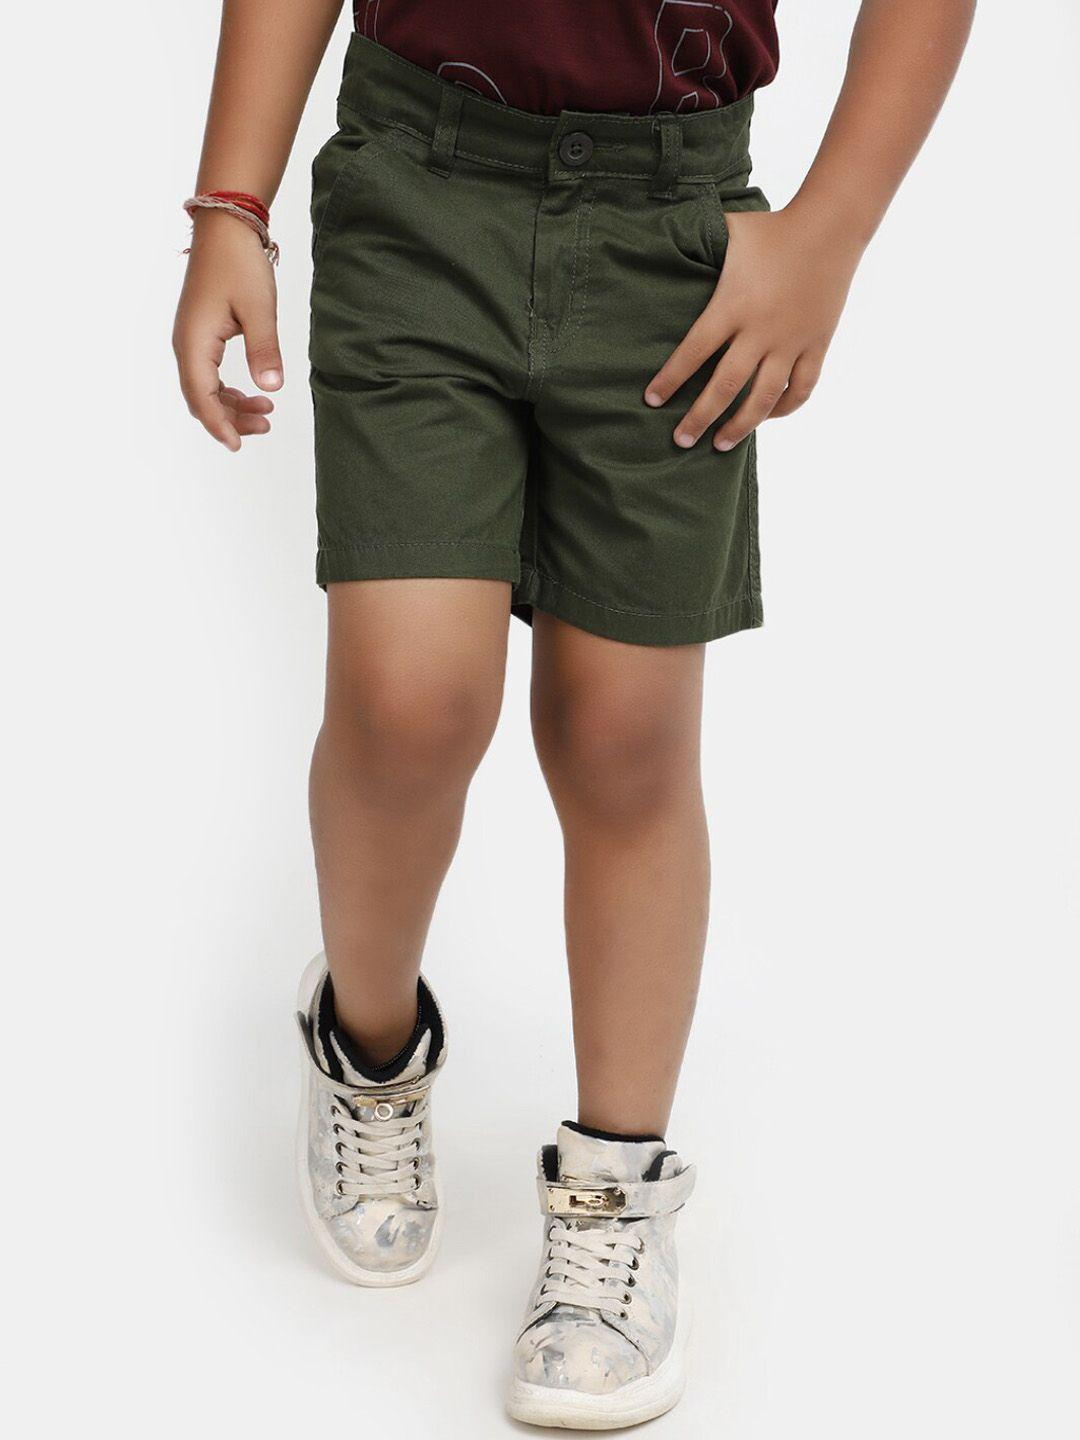 v-mart boys mid rise cotton shorts